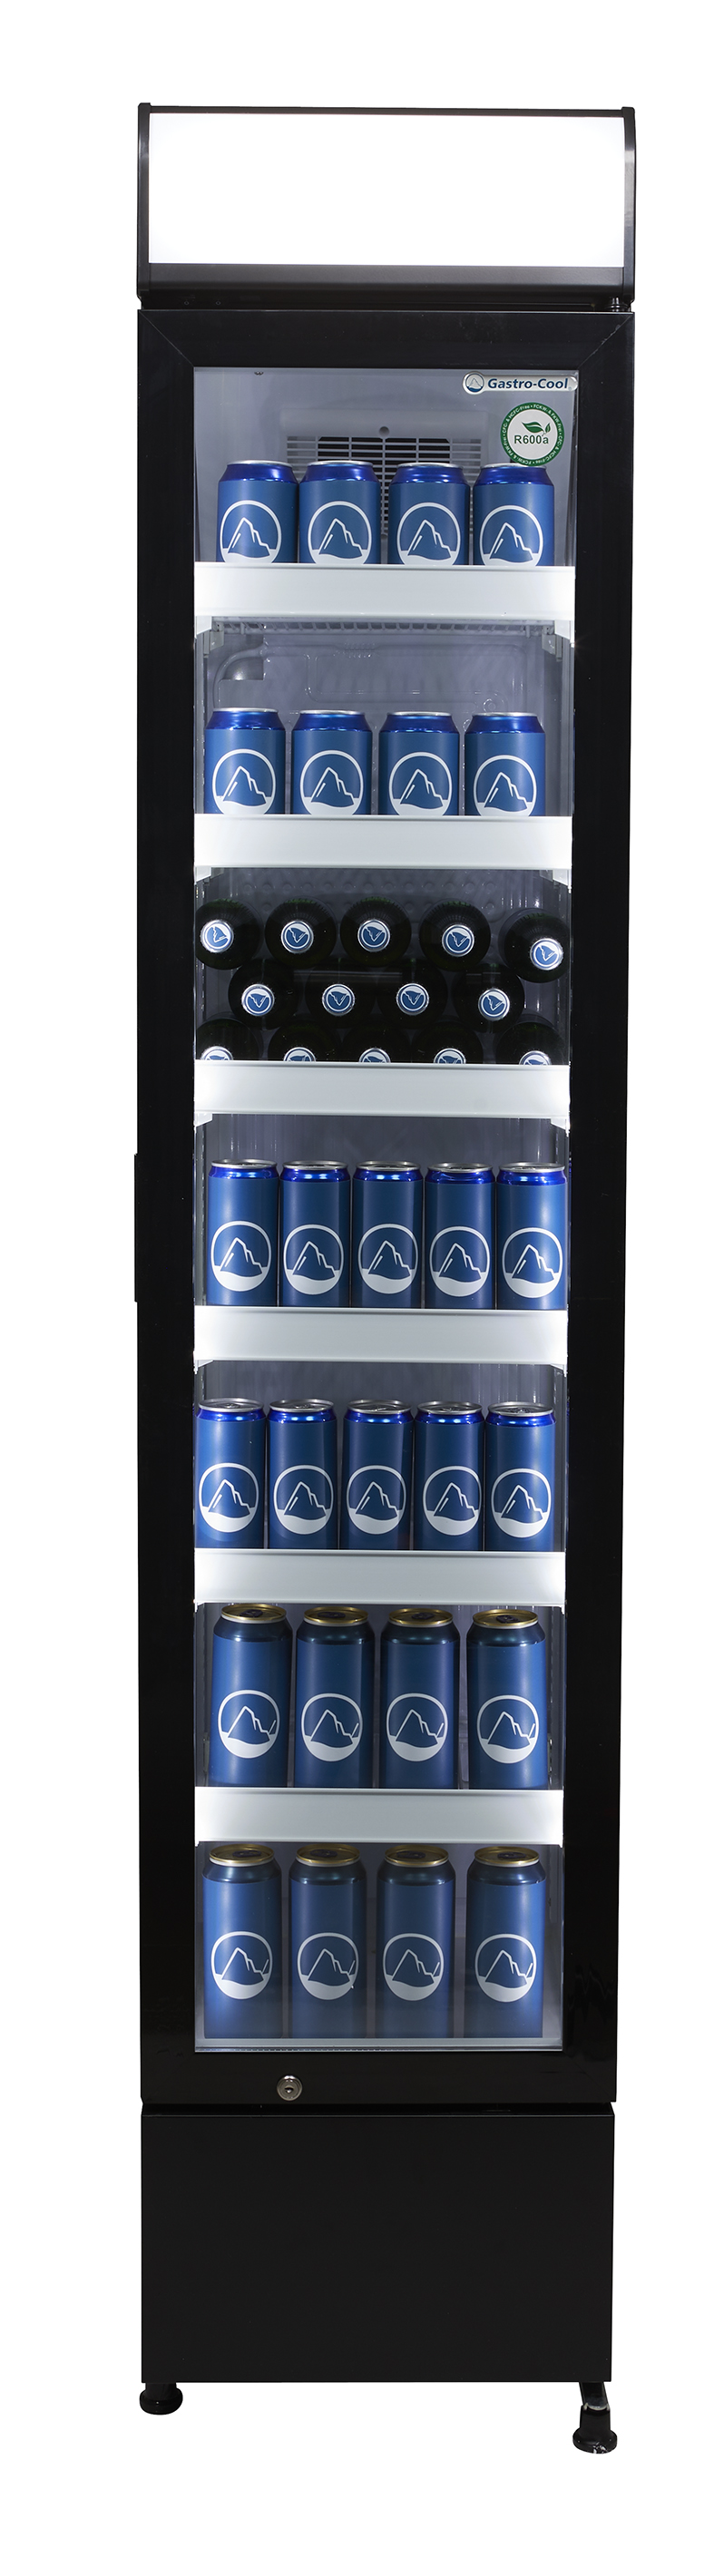 Gastro-Cool - GCDC130 Flaschenkühlschrank mit Leuchtdisplay - frontal gefüllt